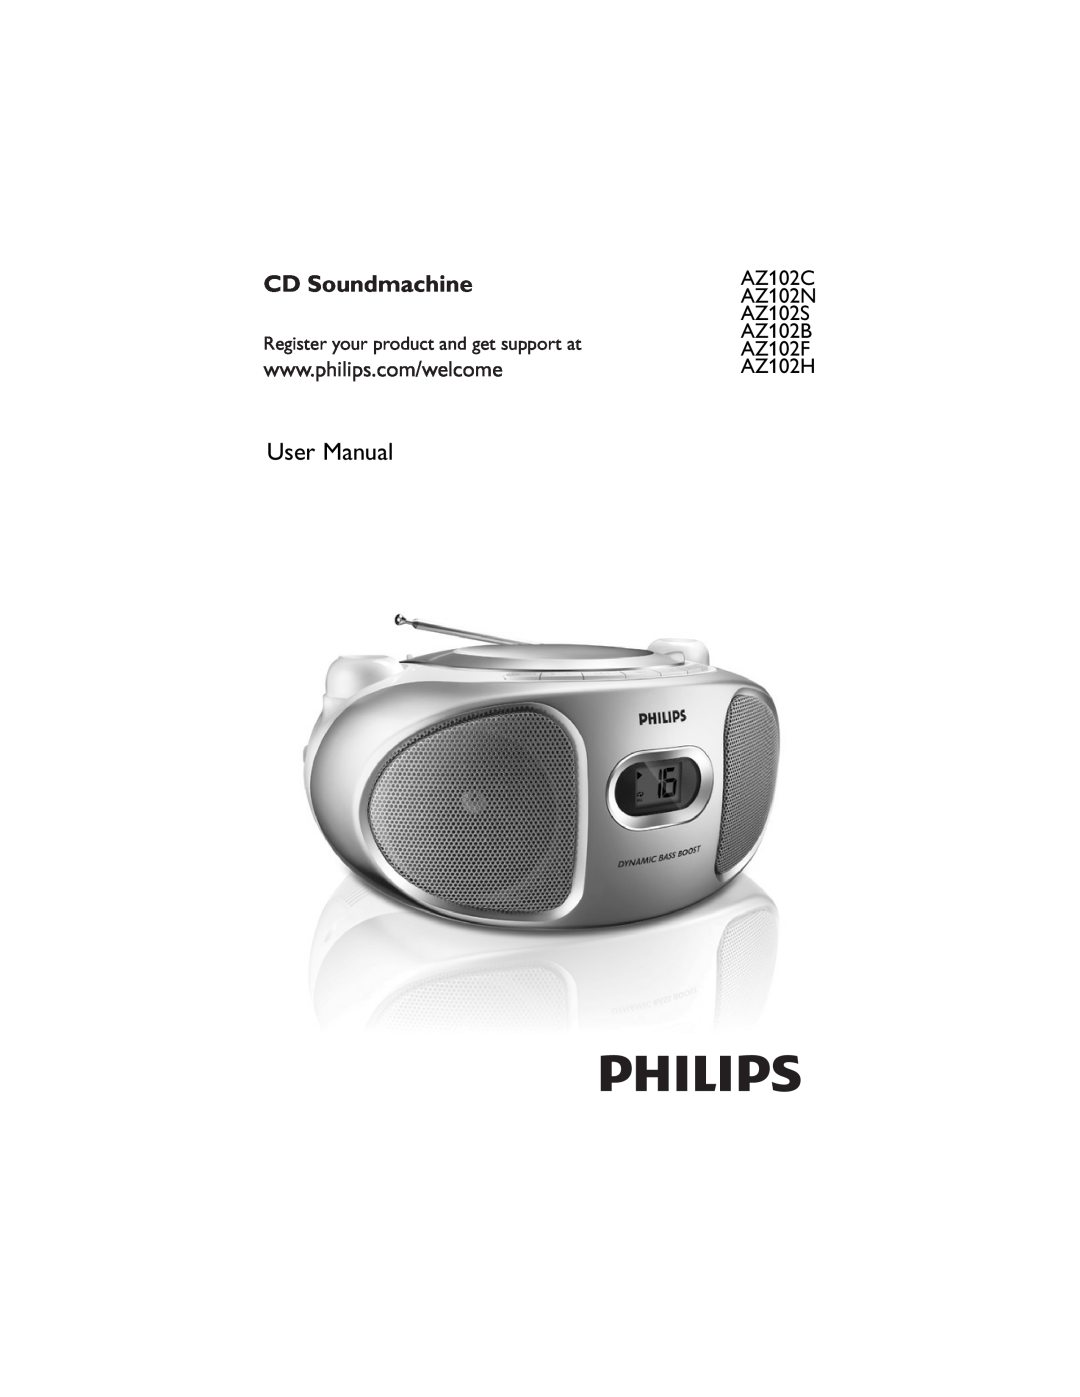 Philips AZ102F user manual CD Soundmachine, AZ102N, AZ102S, AZ102B, AZ102H, AZ102C 